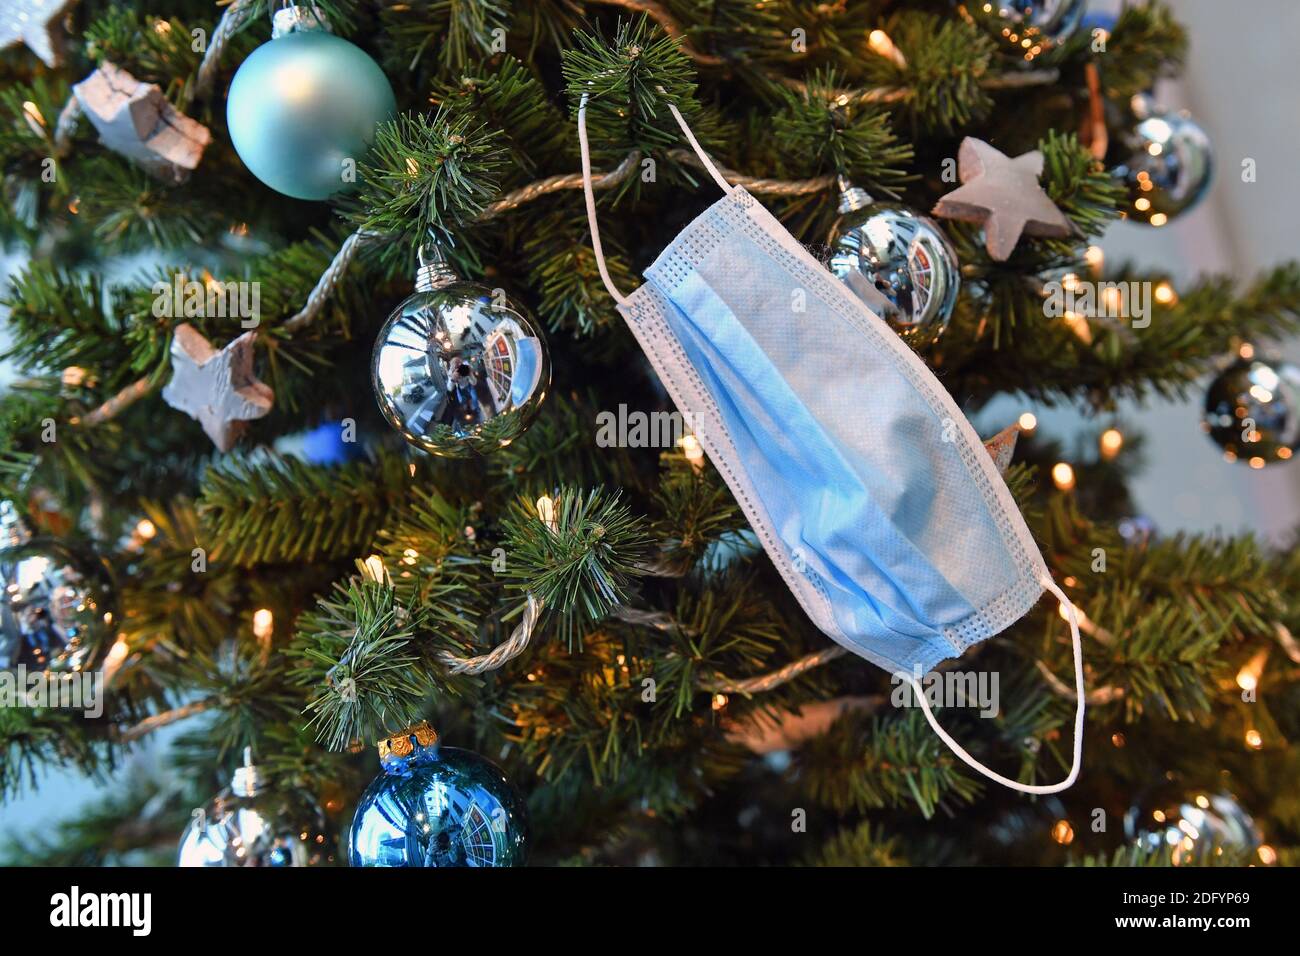 München, Deutschland. Dezember 2020. Gesichtsmaske, Maske hängt am Weihnachtsbaum, Weihaftertsbaum, Weihnachtsbaum in der CSU-Zentrale in München am 7. Dezember 2020 Quelle: dpa/Alamy Live News Stockfoto